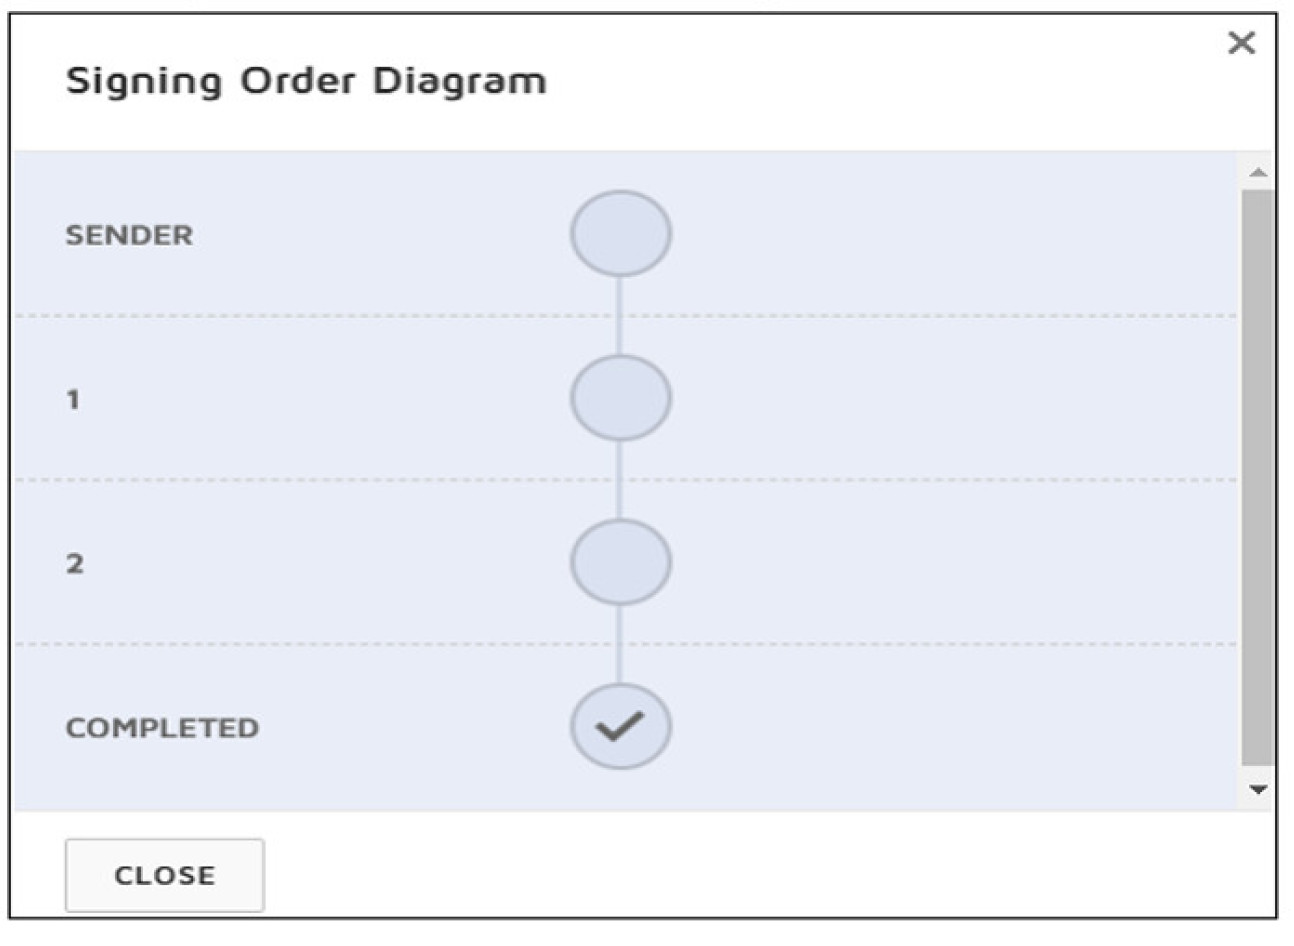 Signer order diagram